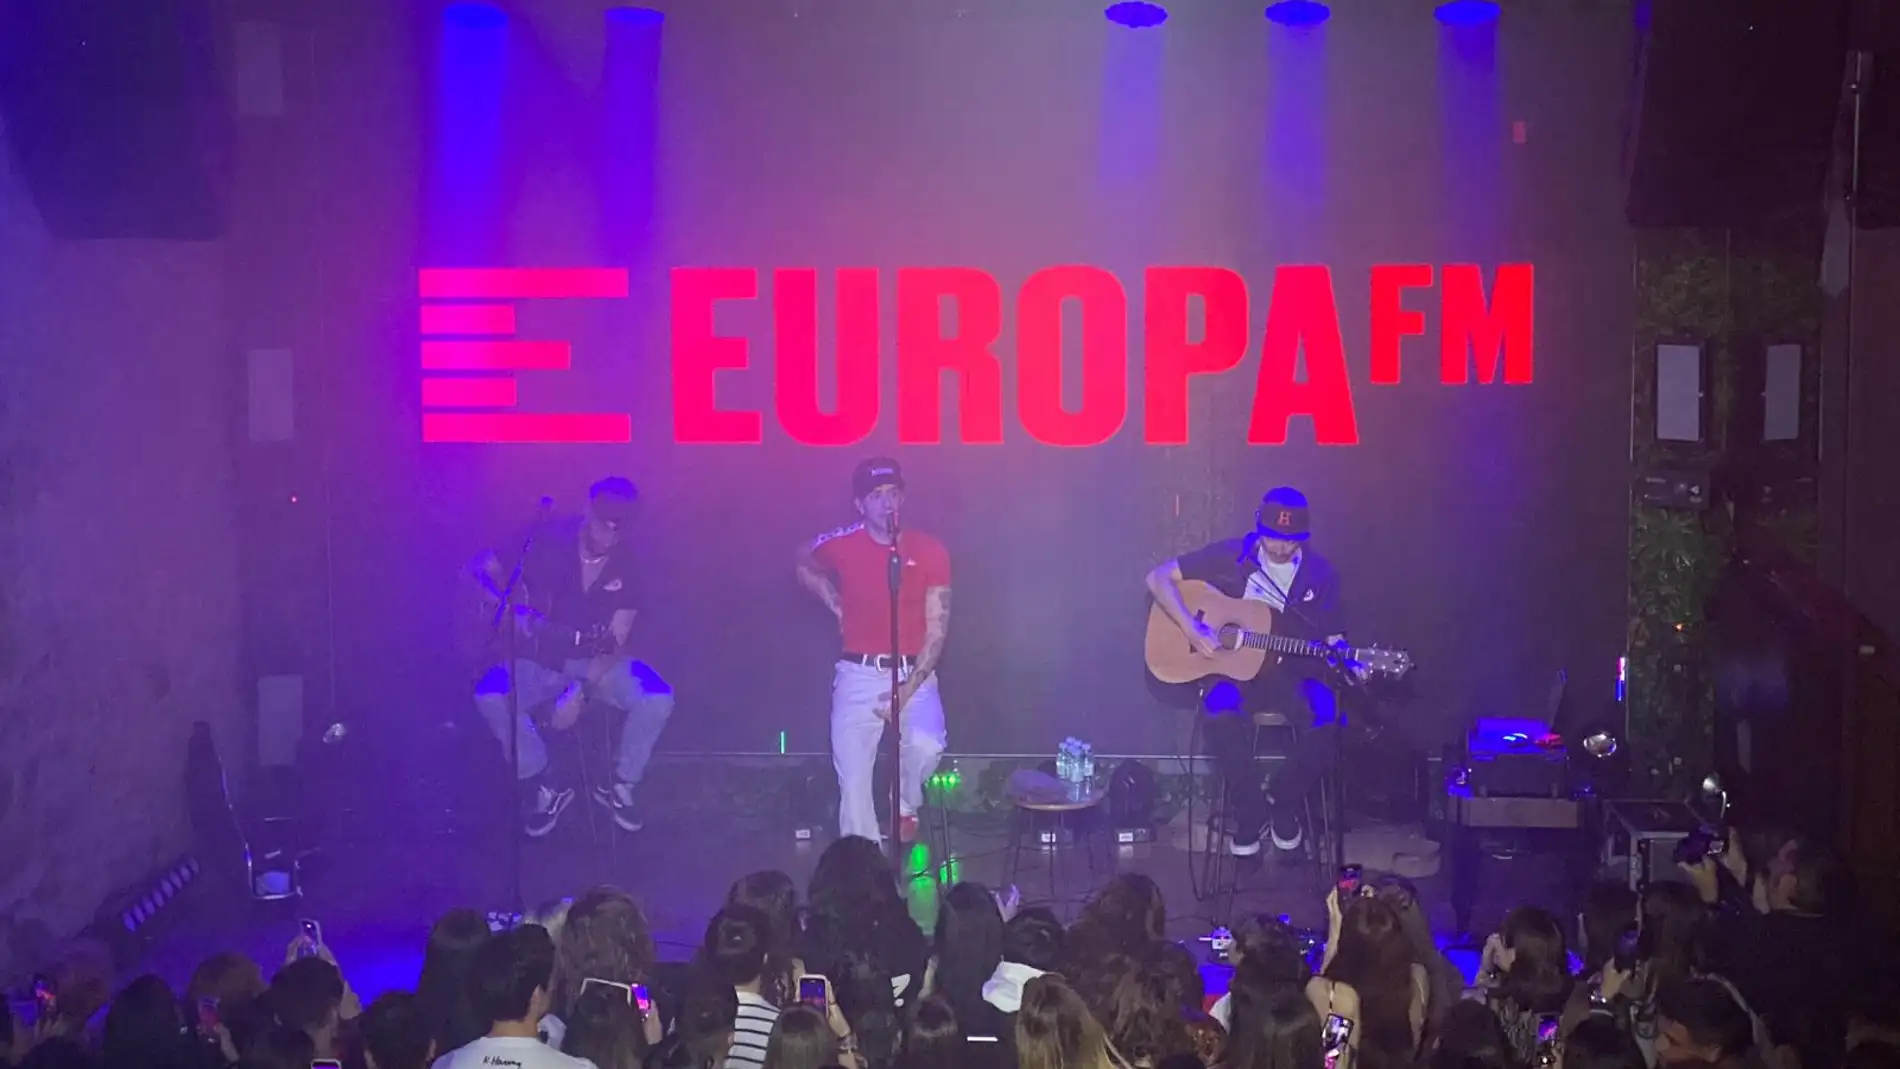 Unos pantalones blancos y una camiseta roja, vestuario elegido por el cantante para su actuación